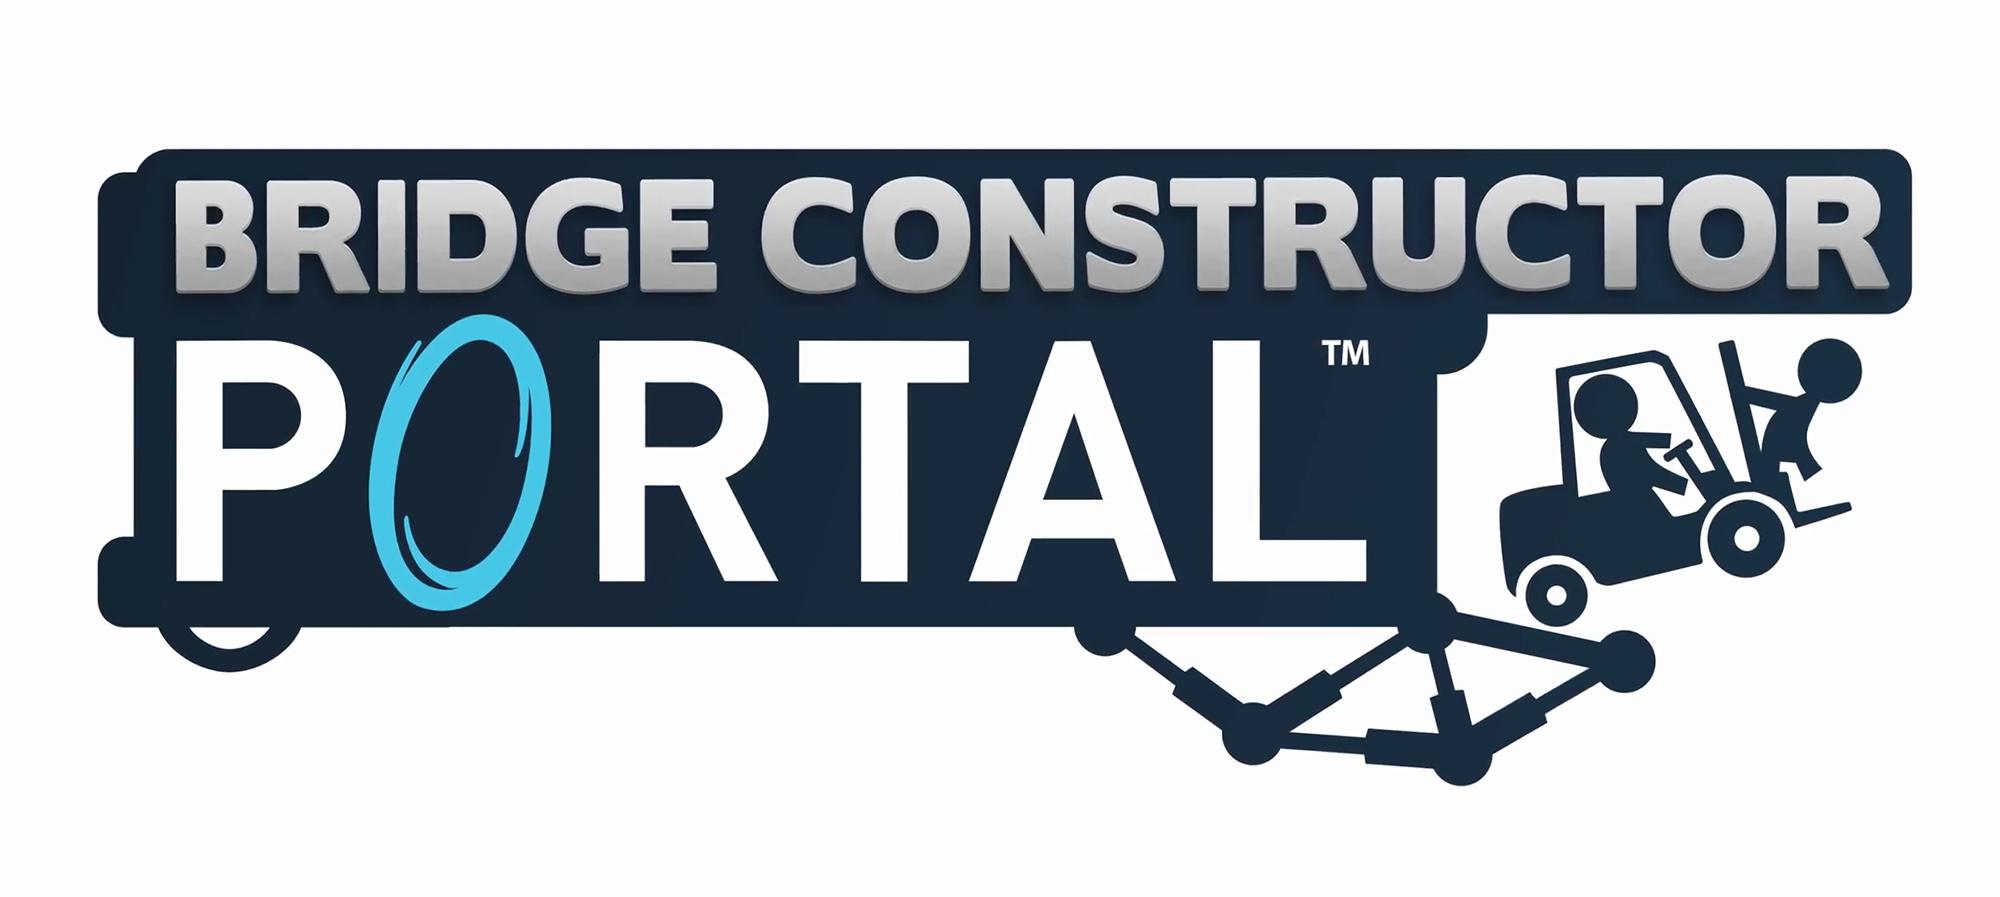 Bridge Constructor Portal, un juego spin-off de Portal, llegará a PC y Smartphones